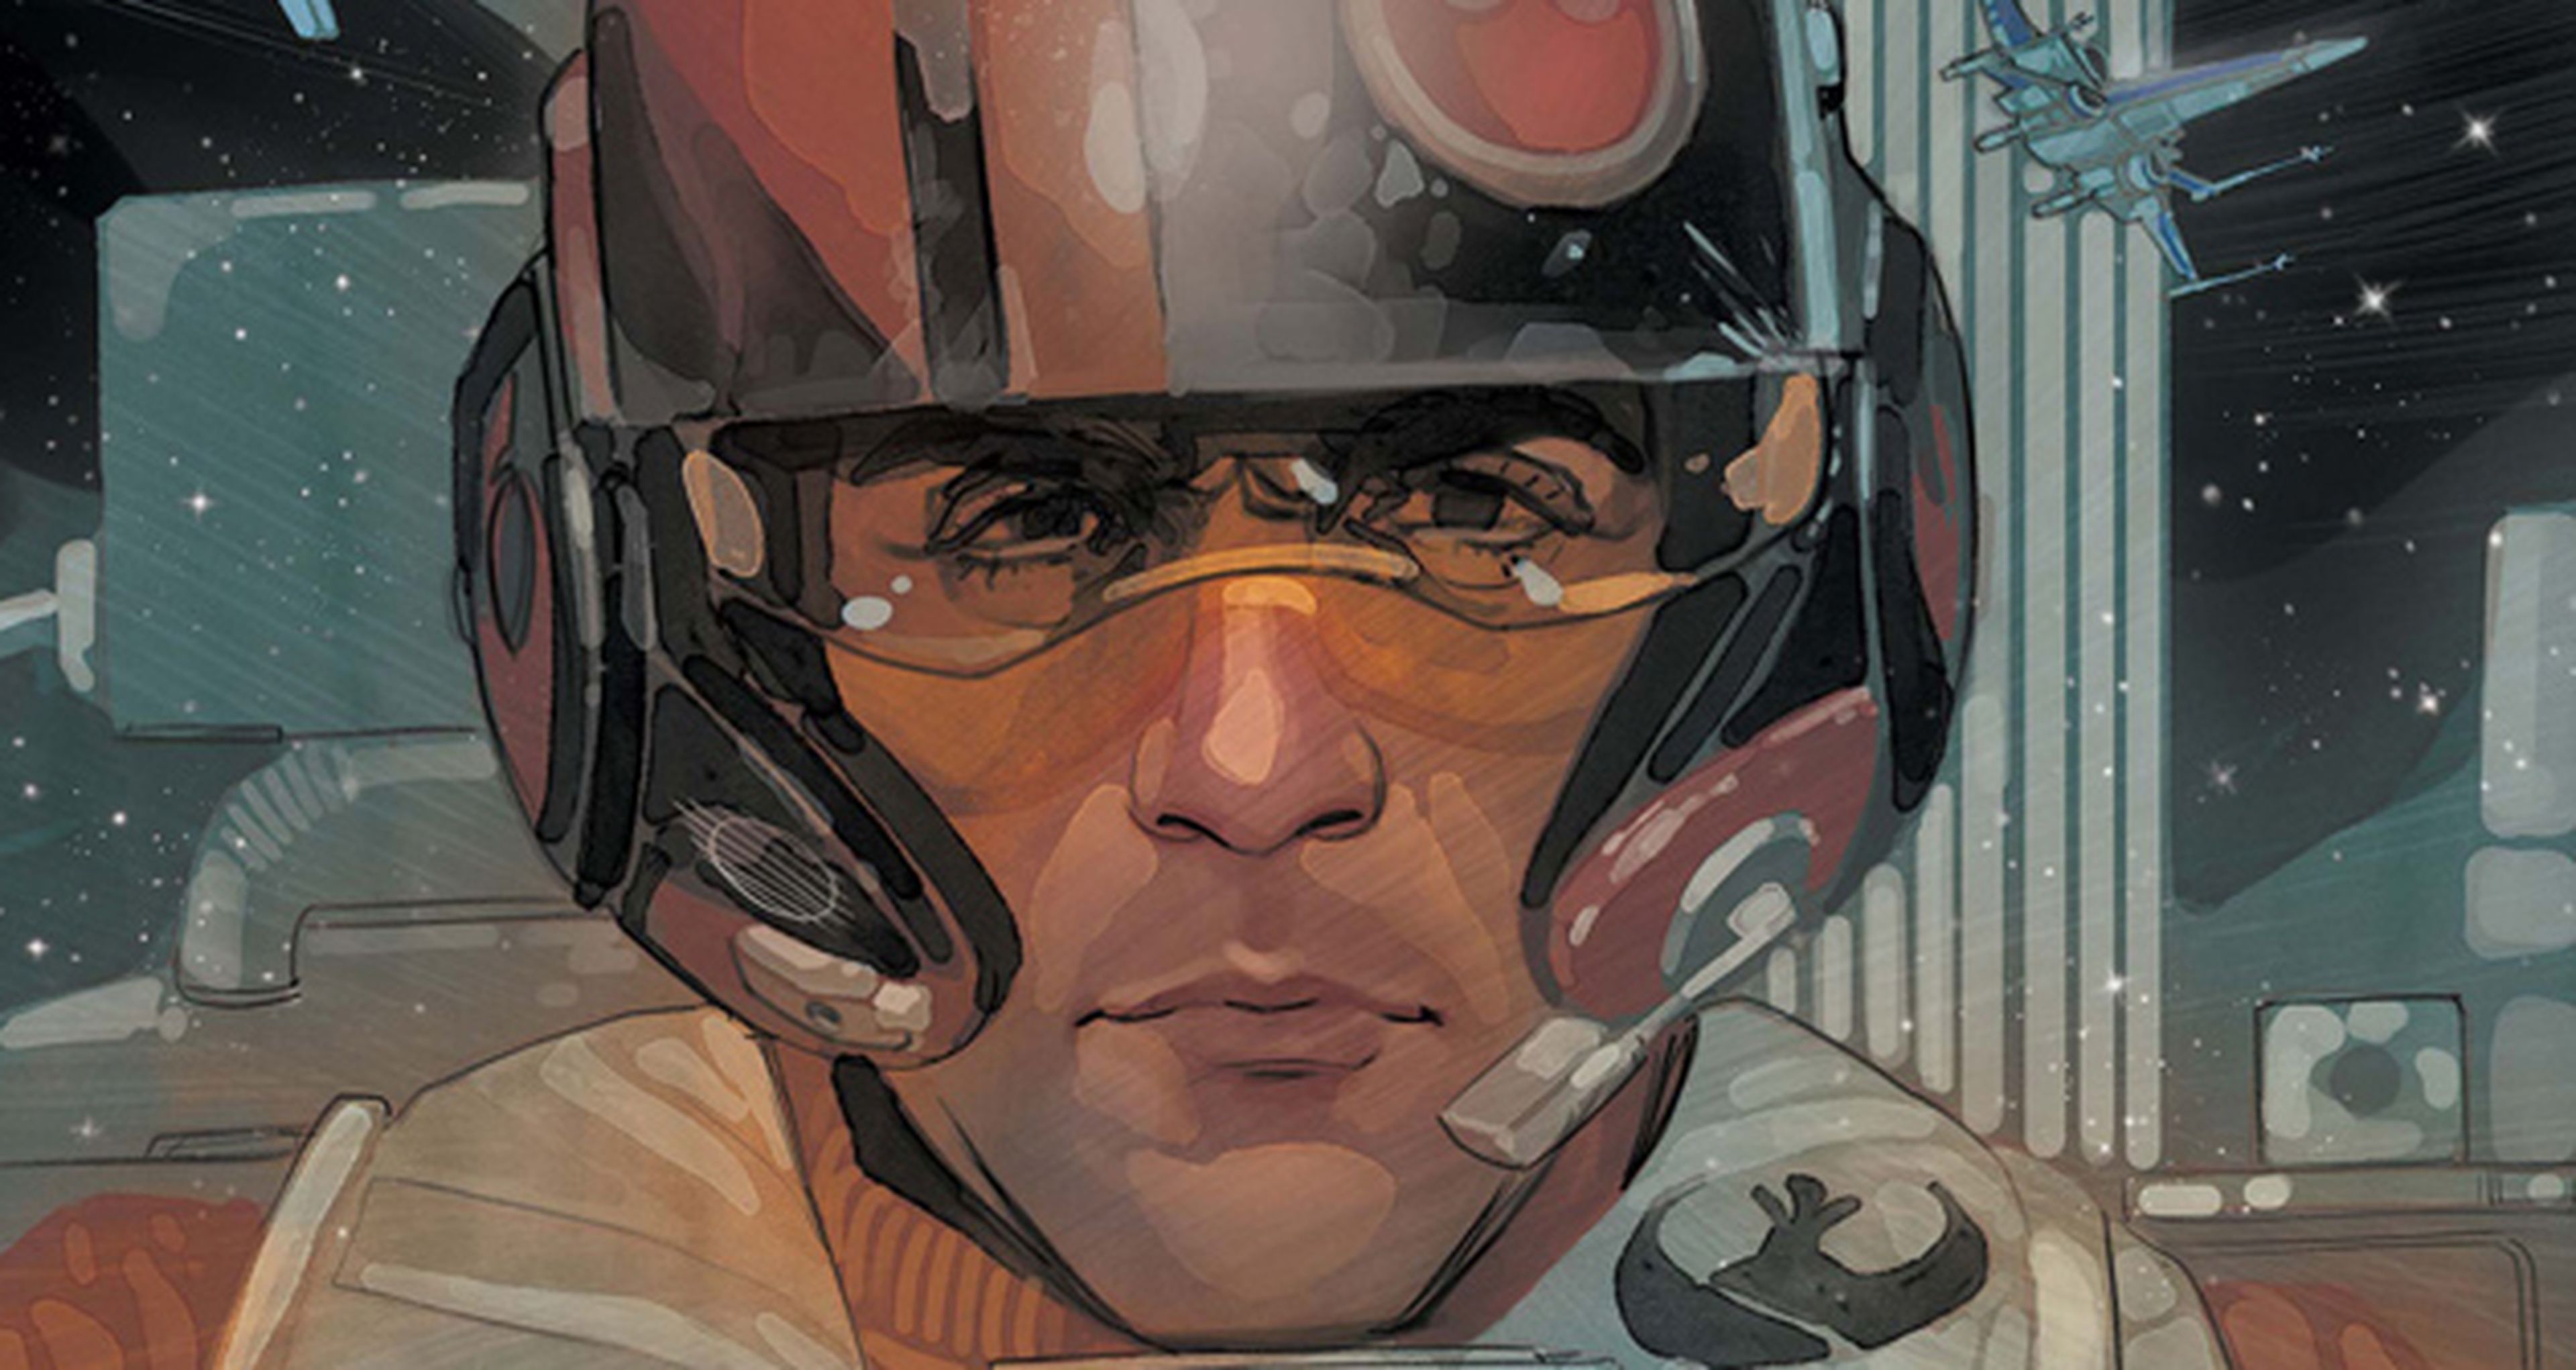 Star Wars de Marvel: Poe Dameron protagonizará una serie de cómic